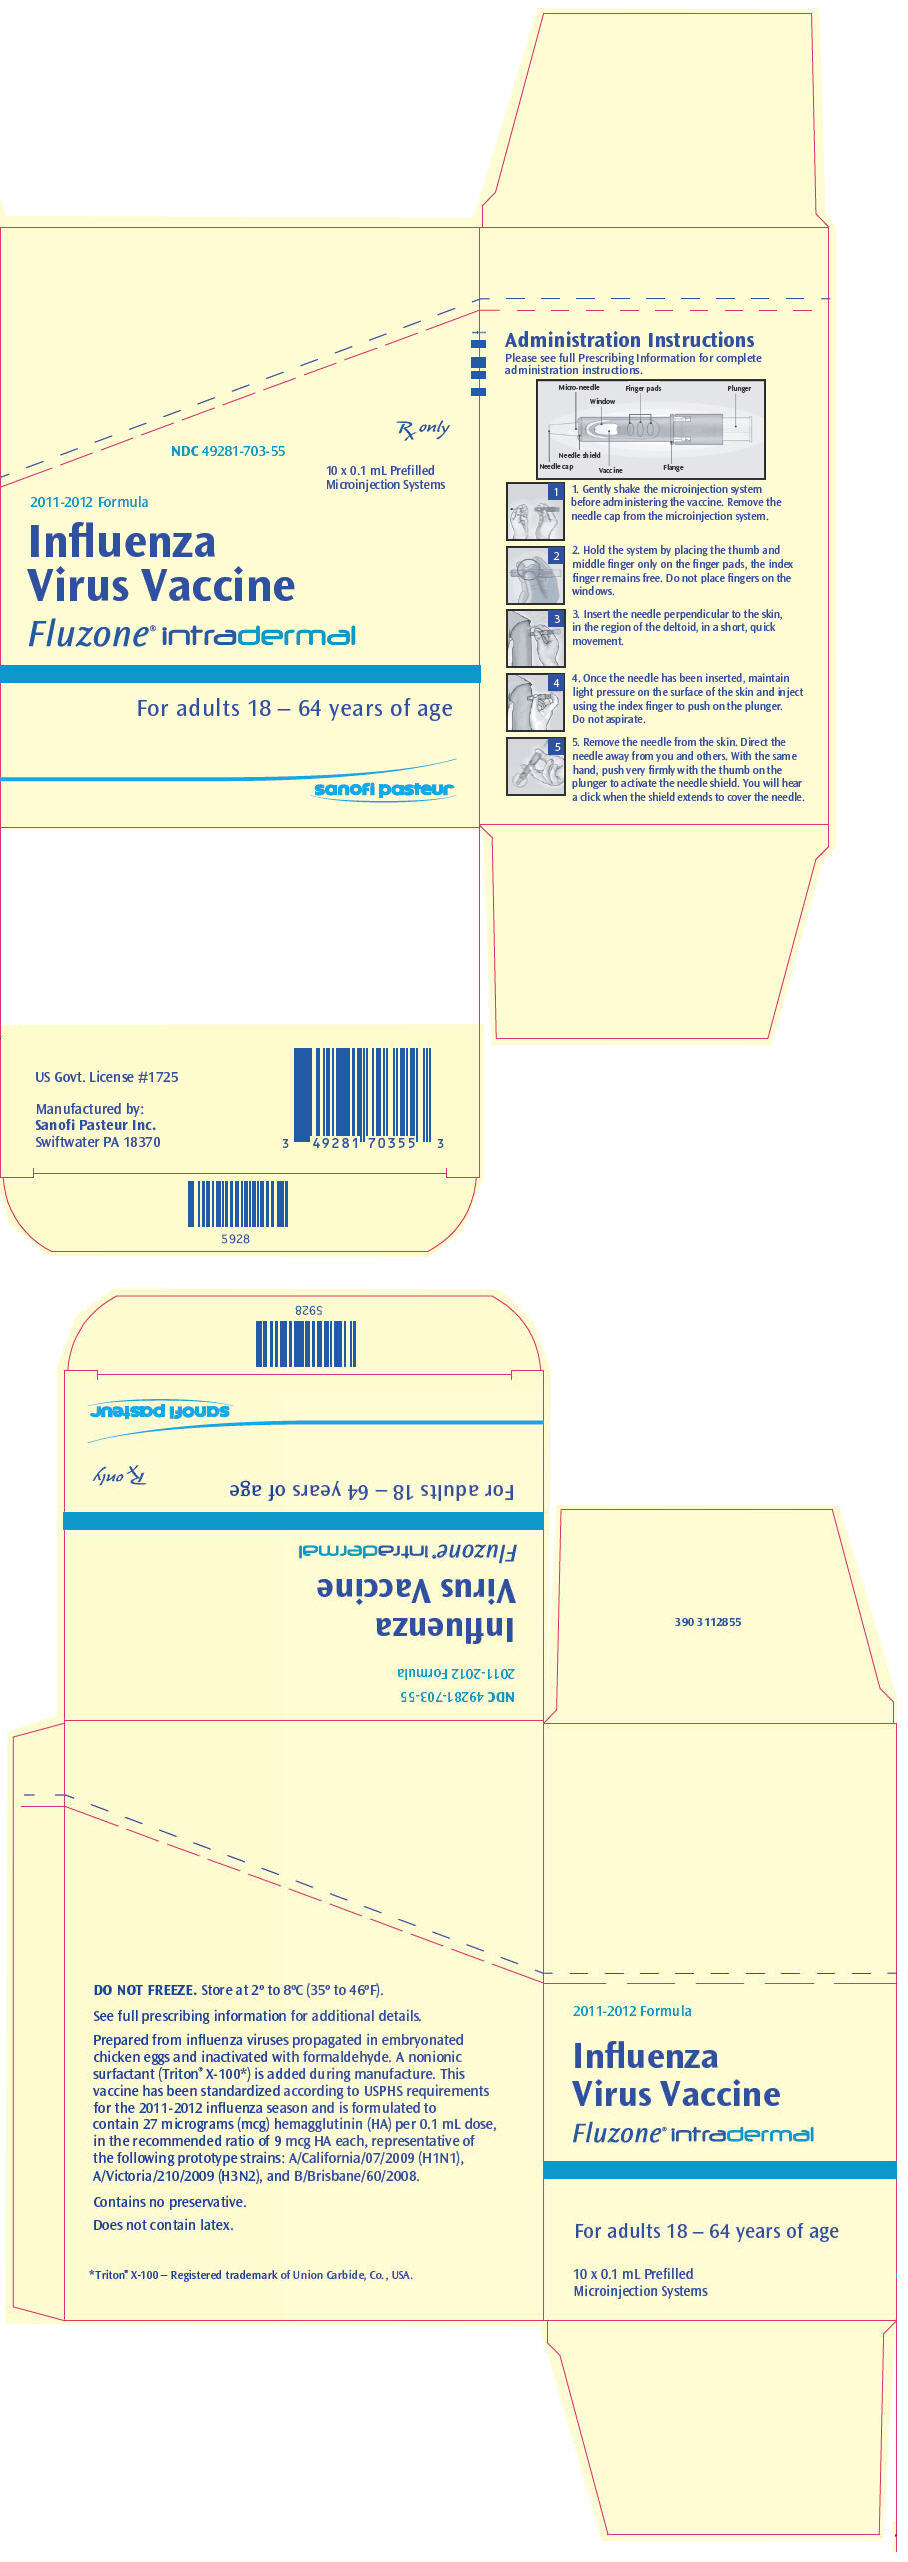 PRINCIPAL DISPLAY PANEL - 10 Syringe Carton